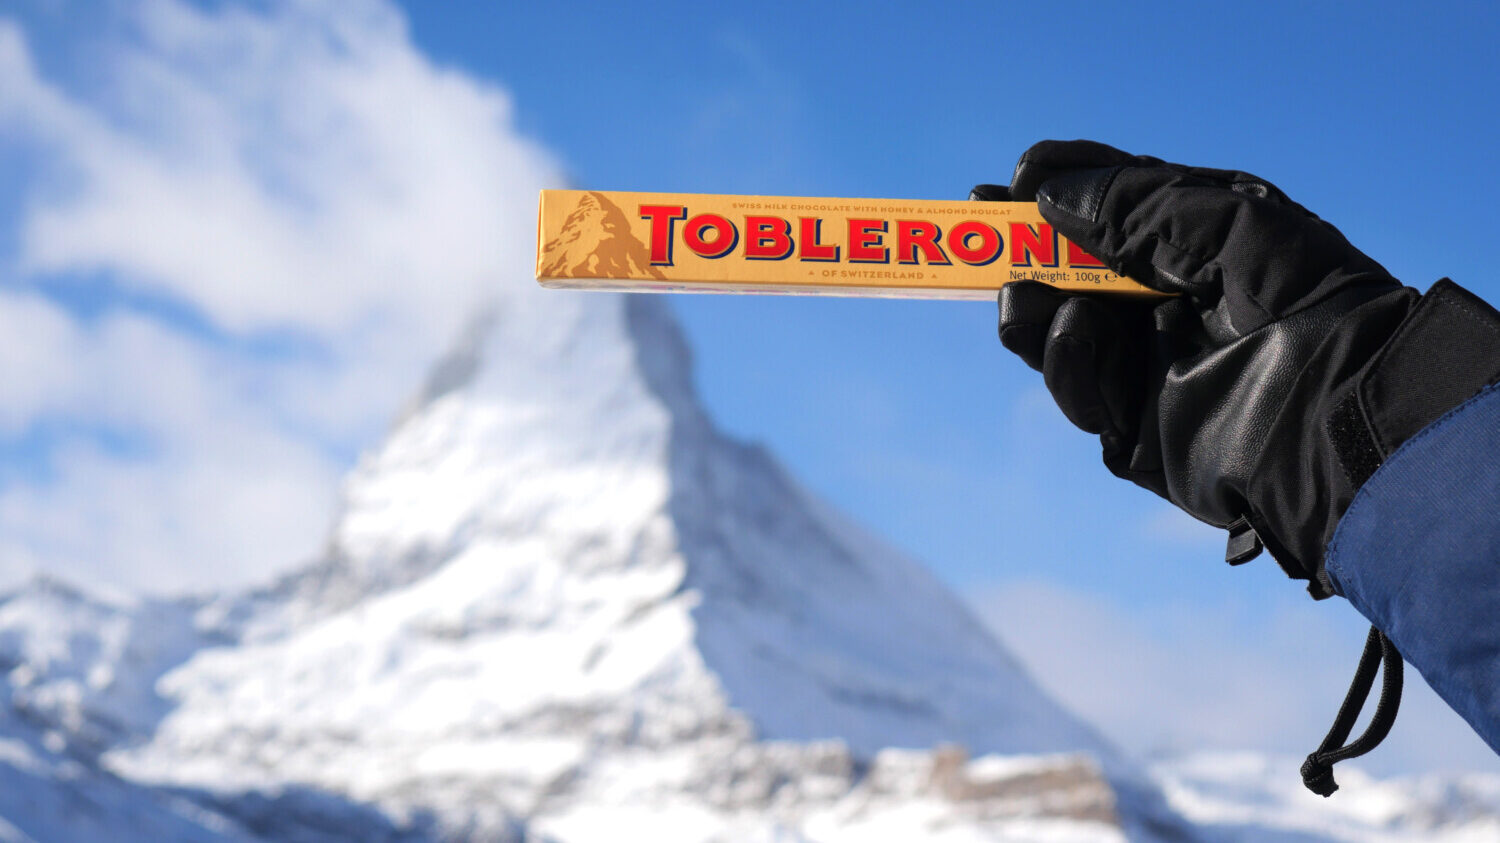 Toblerone bar held in front of Matterhorn